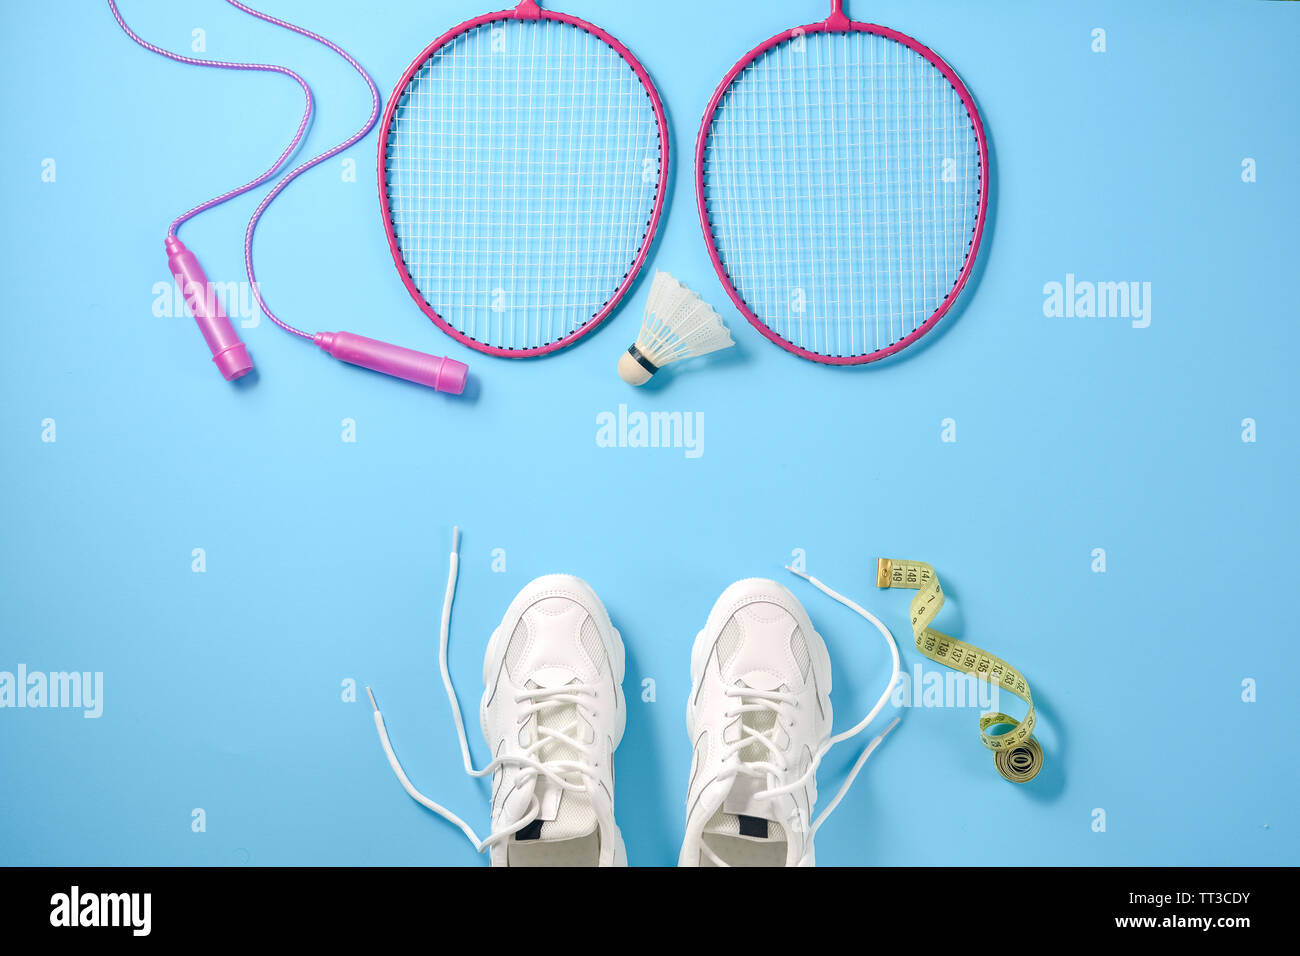 Deportes shuttlecock plana con laicos y badminton raqueta, comba, zapatillas y cinta métrica sobre fondo azul. Fitness, deporte y vida sana Foto de stock